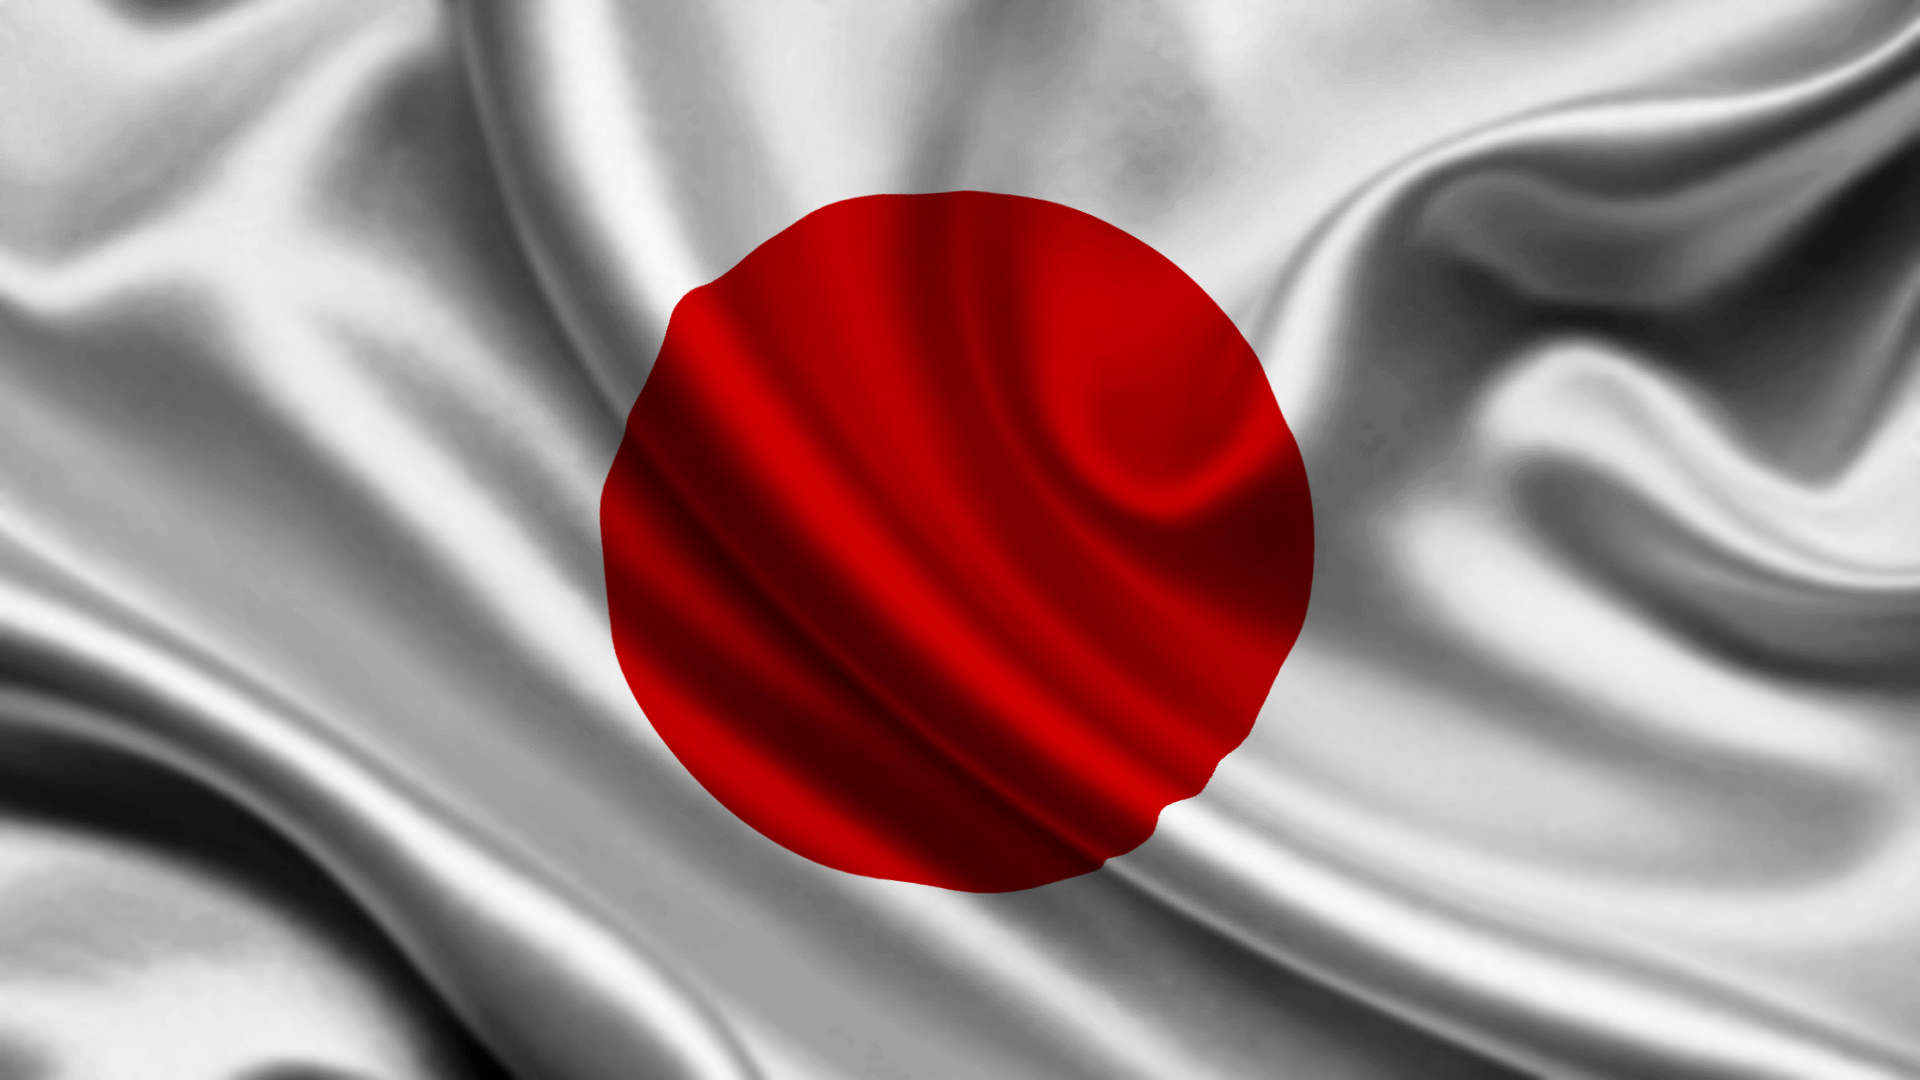 bandera-japon